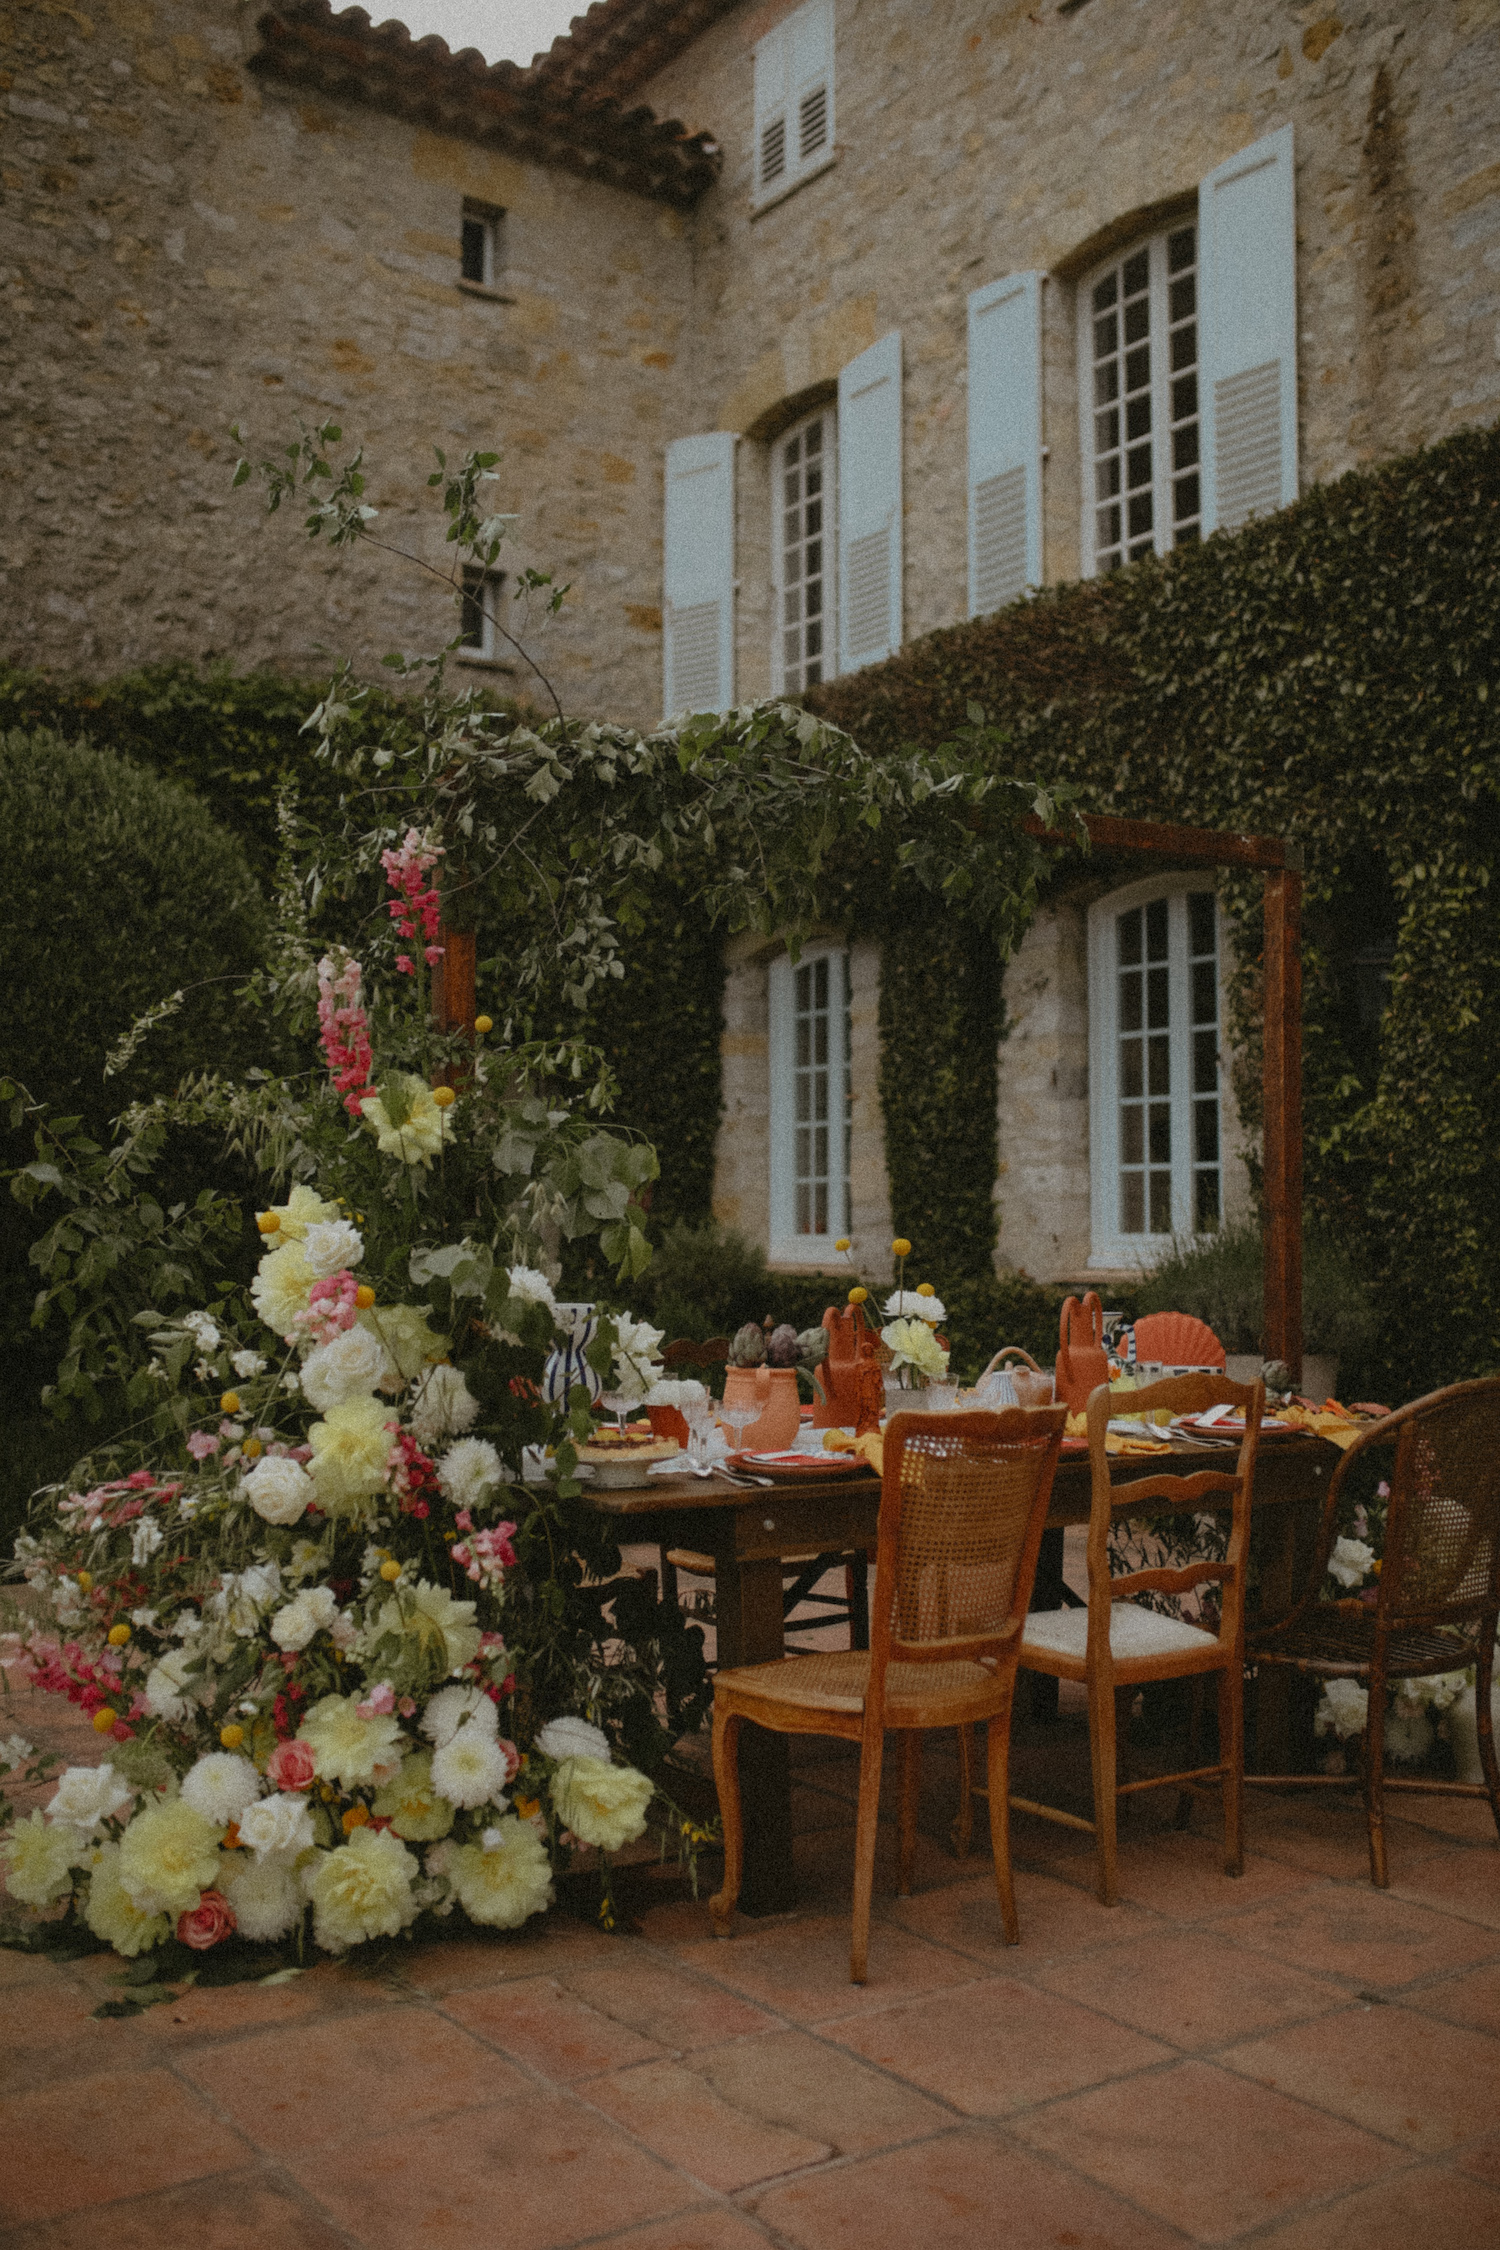 Le Banquet des Noces - Blog Mariage Madame C